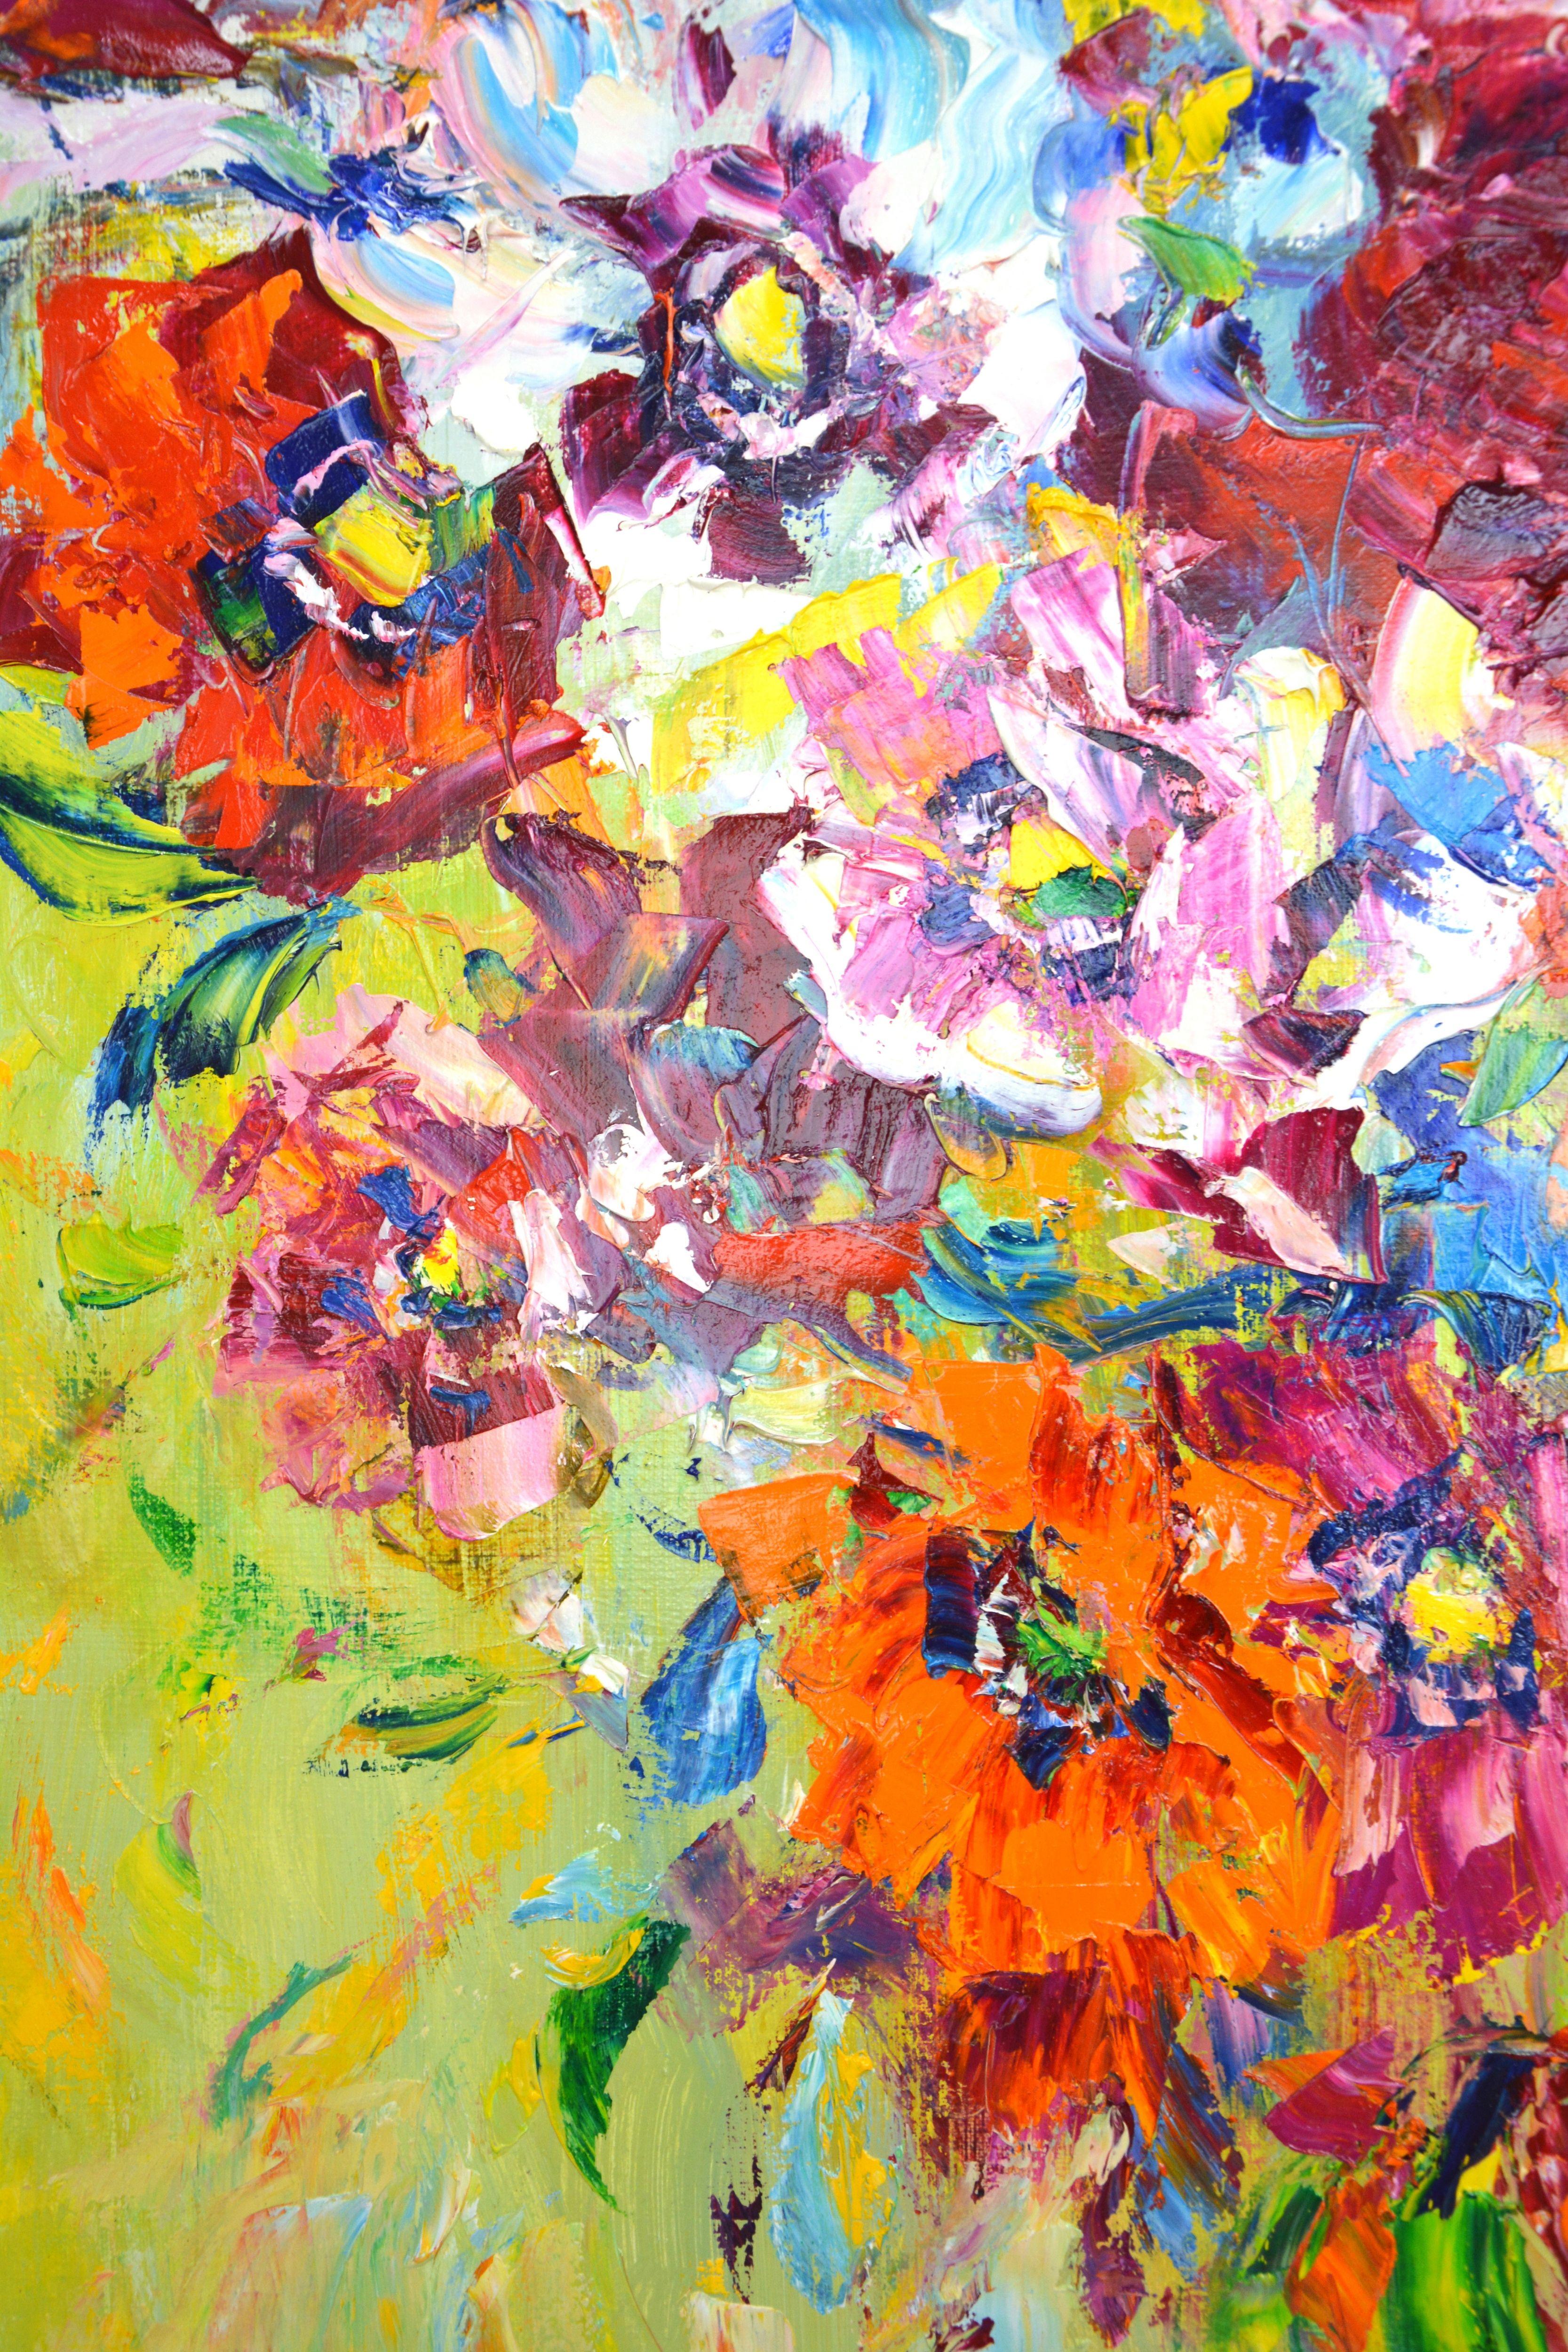 L'humeur de Poppy. Bouquet de fleurs d'été : Coquelicots rouges, roses, blancs sur un fond abstrait, créé avec des pinceaux et une spatule. L'image est remplie d'énergie positive et solaire. Fait partie d'une série permanente d'arrangements floraux.